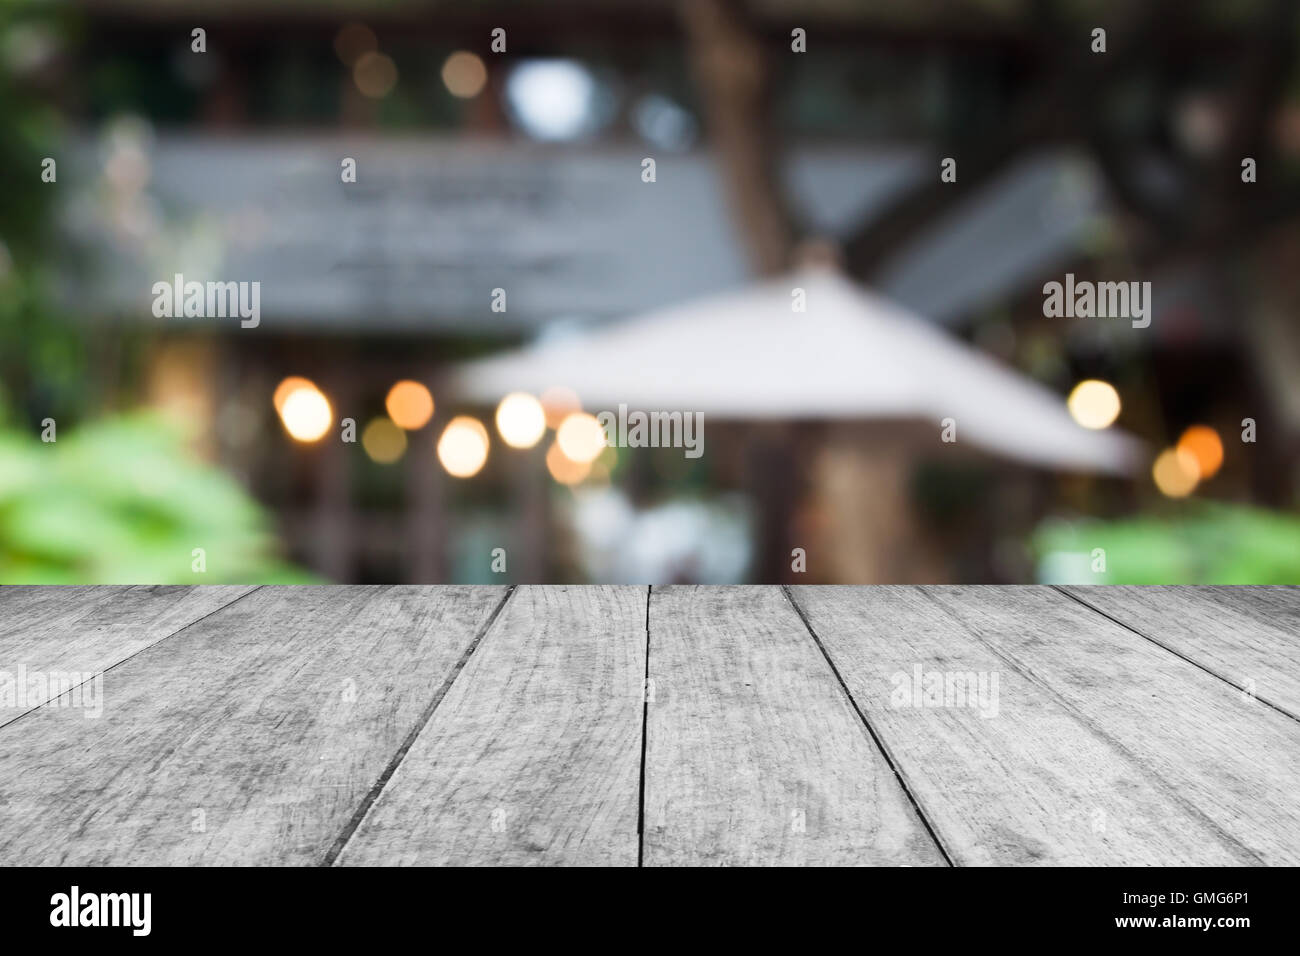 Table en bois noir et blanc top avec cafe blurred abstract background Banque D'Images